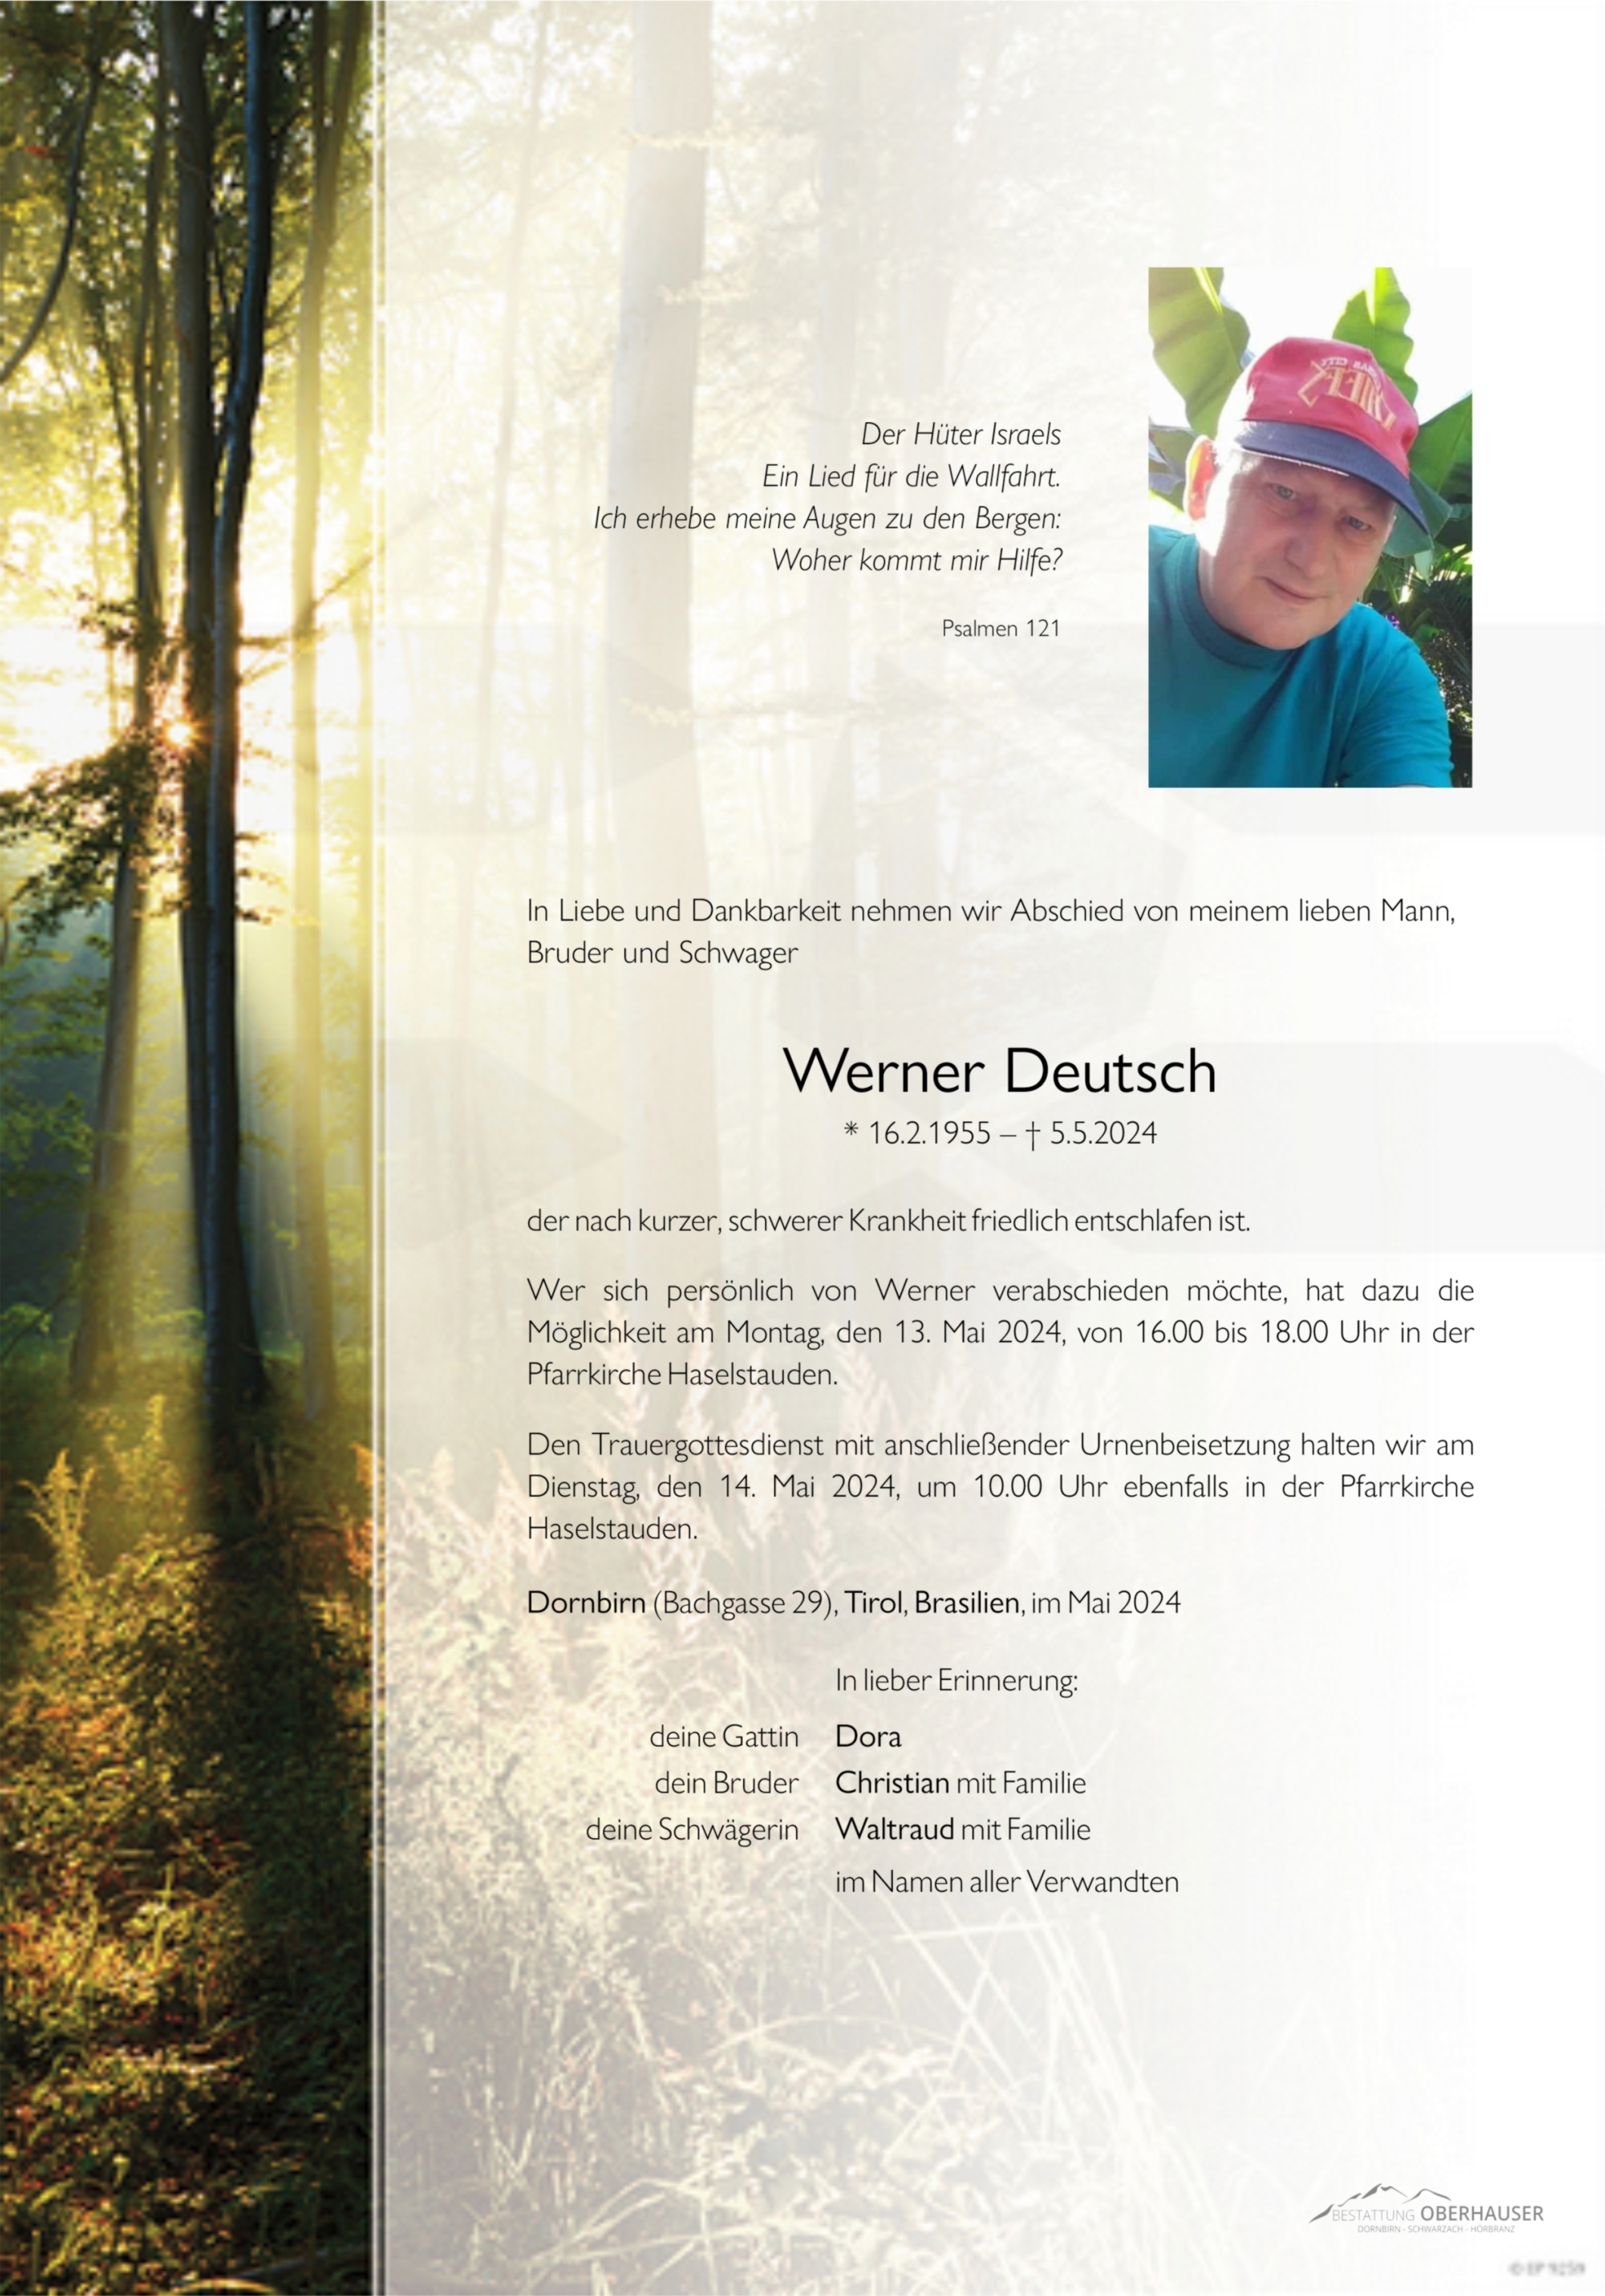 Werner Deutsch